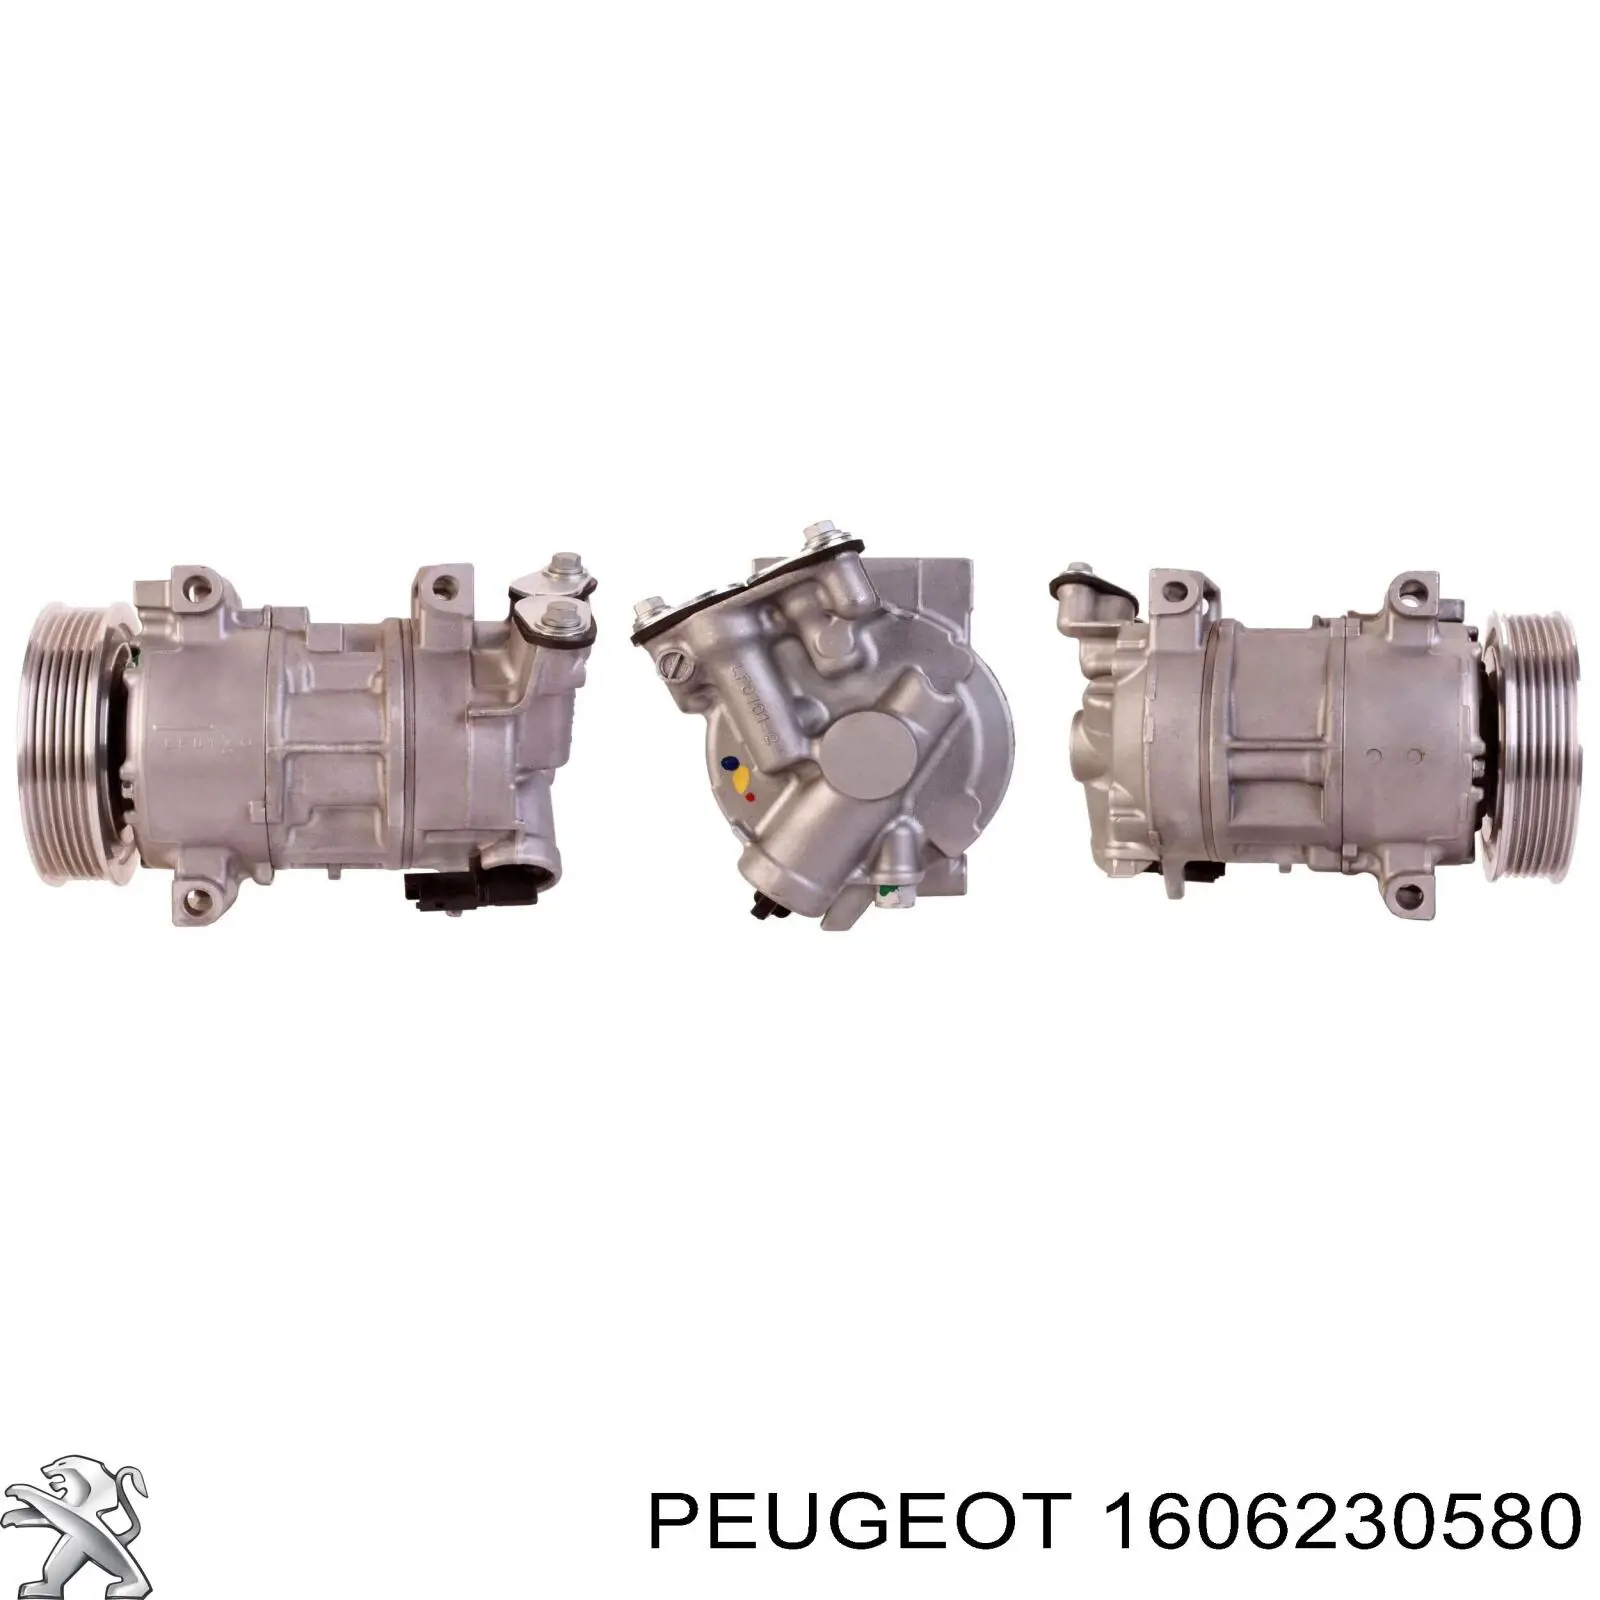 Compresor de aire acondicionado 1606230580 Peugeot/Citroen